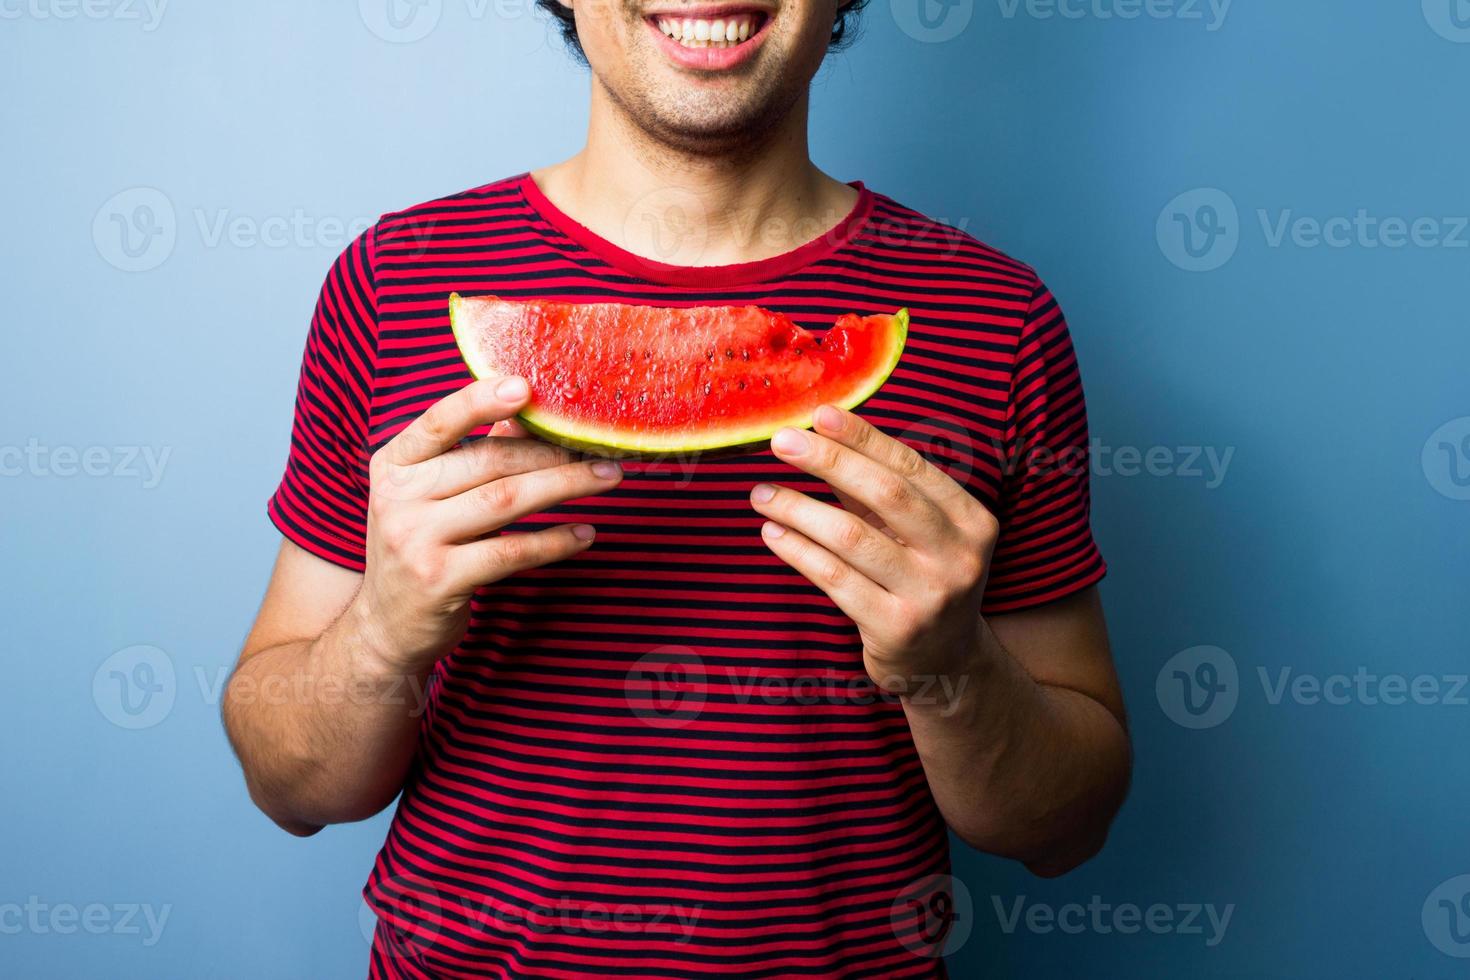 jeune homme multiracial avec une tranche de pastèque photo